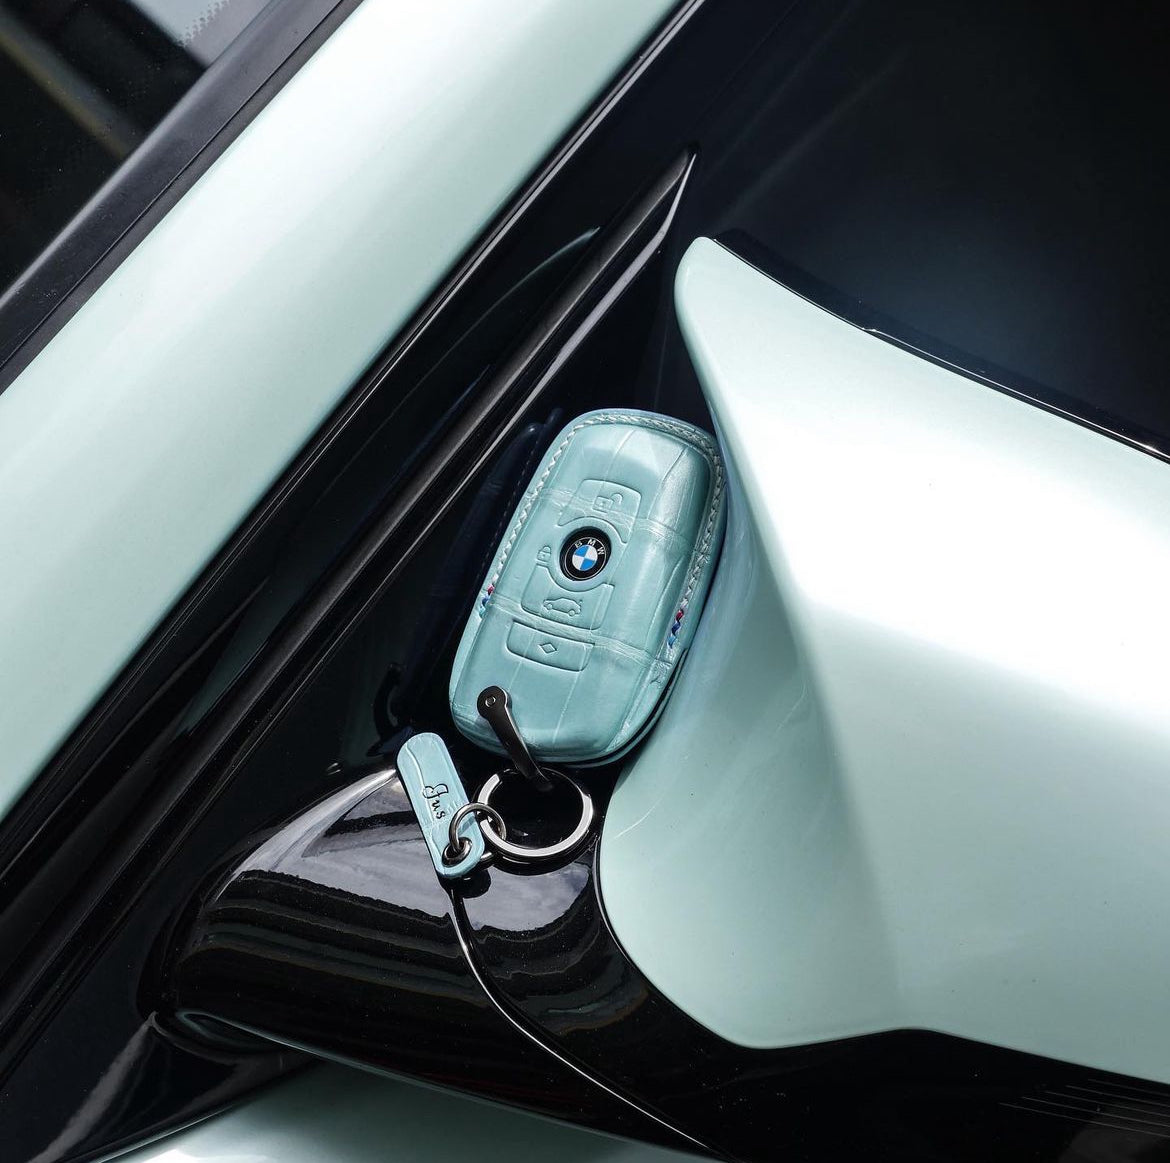 غطاء مفتاح BMW موديل النوع 3 - اطلبه حسب طلبك